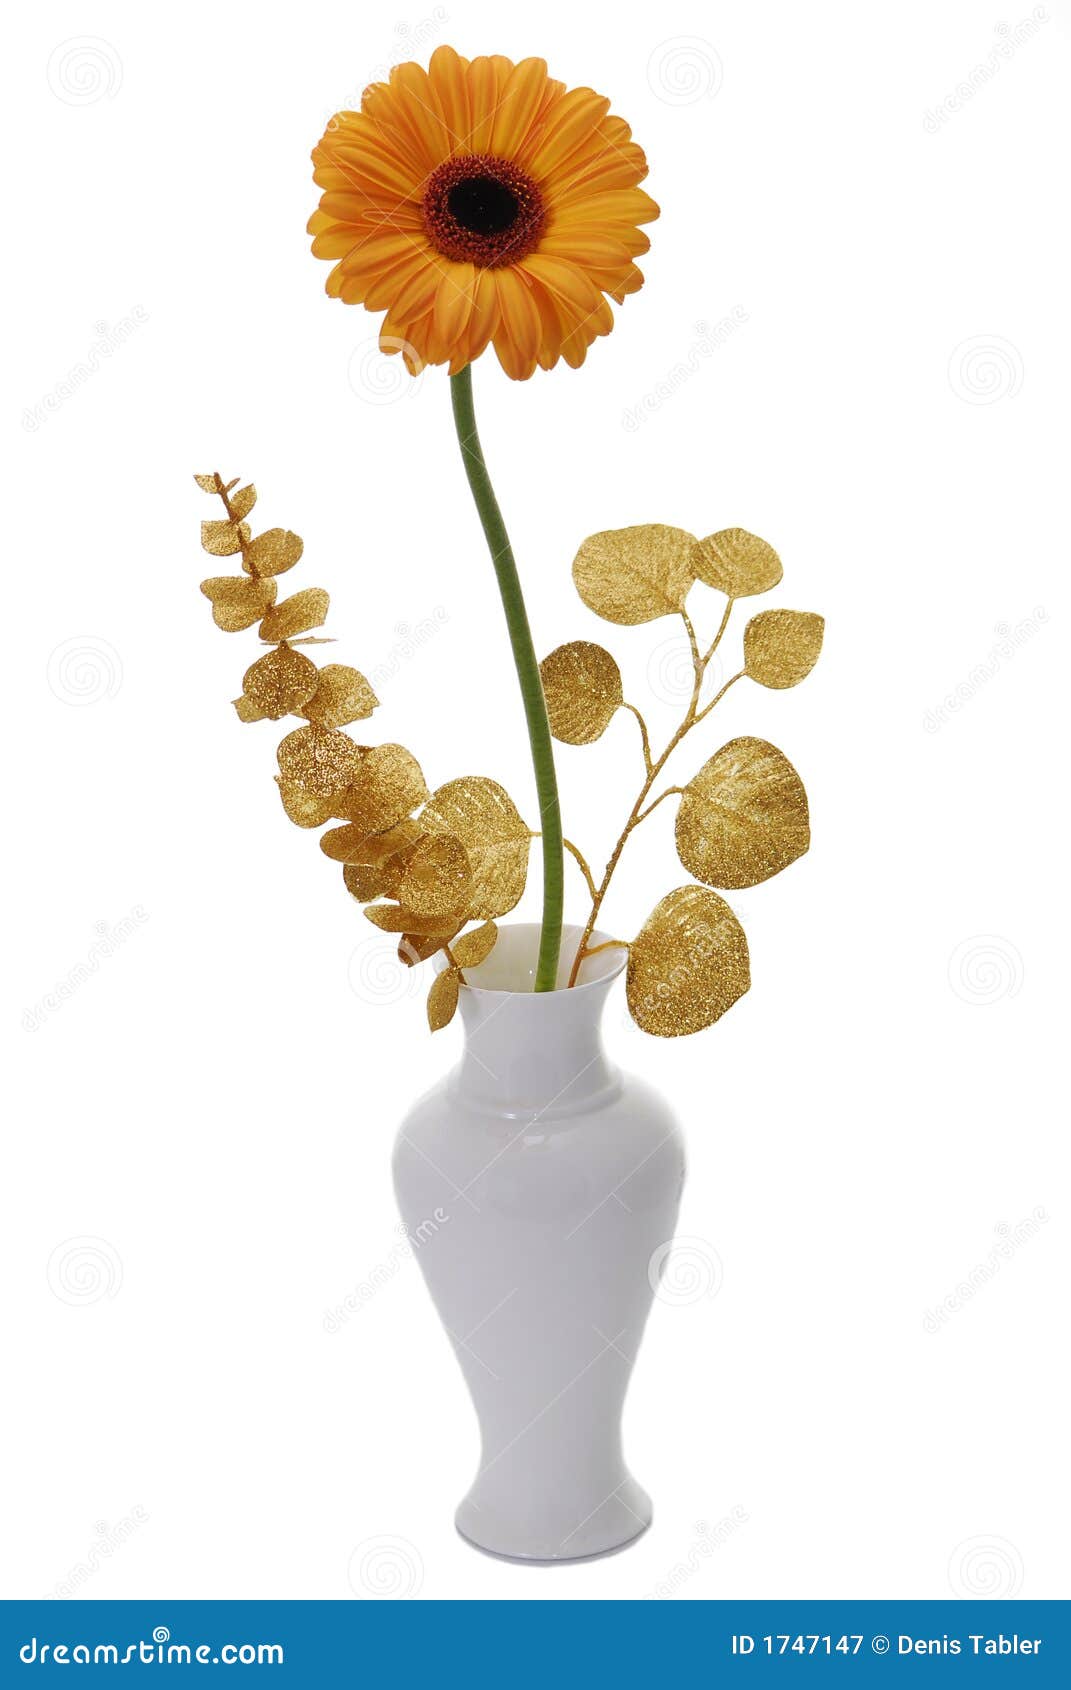 glans gips Diplomatieke kwesties Oranje bloem in vaas stock afbeelding. Image of goudsbloem - 1747147